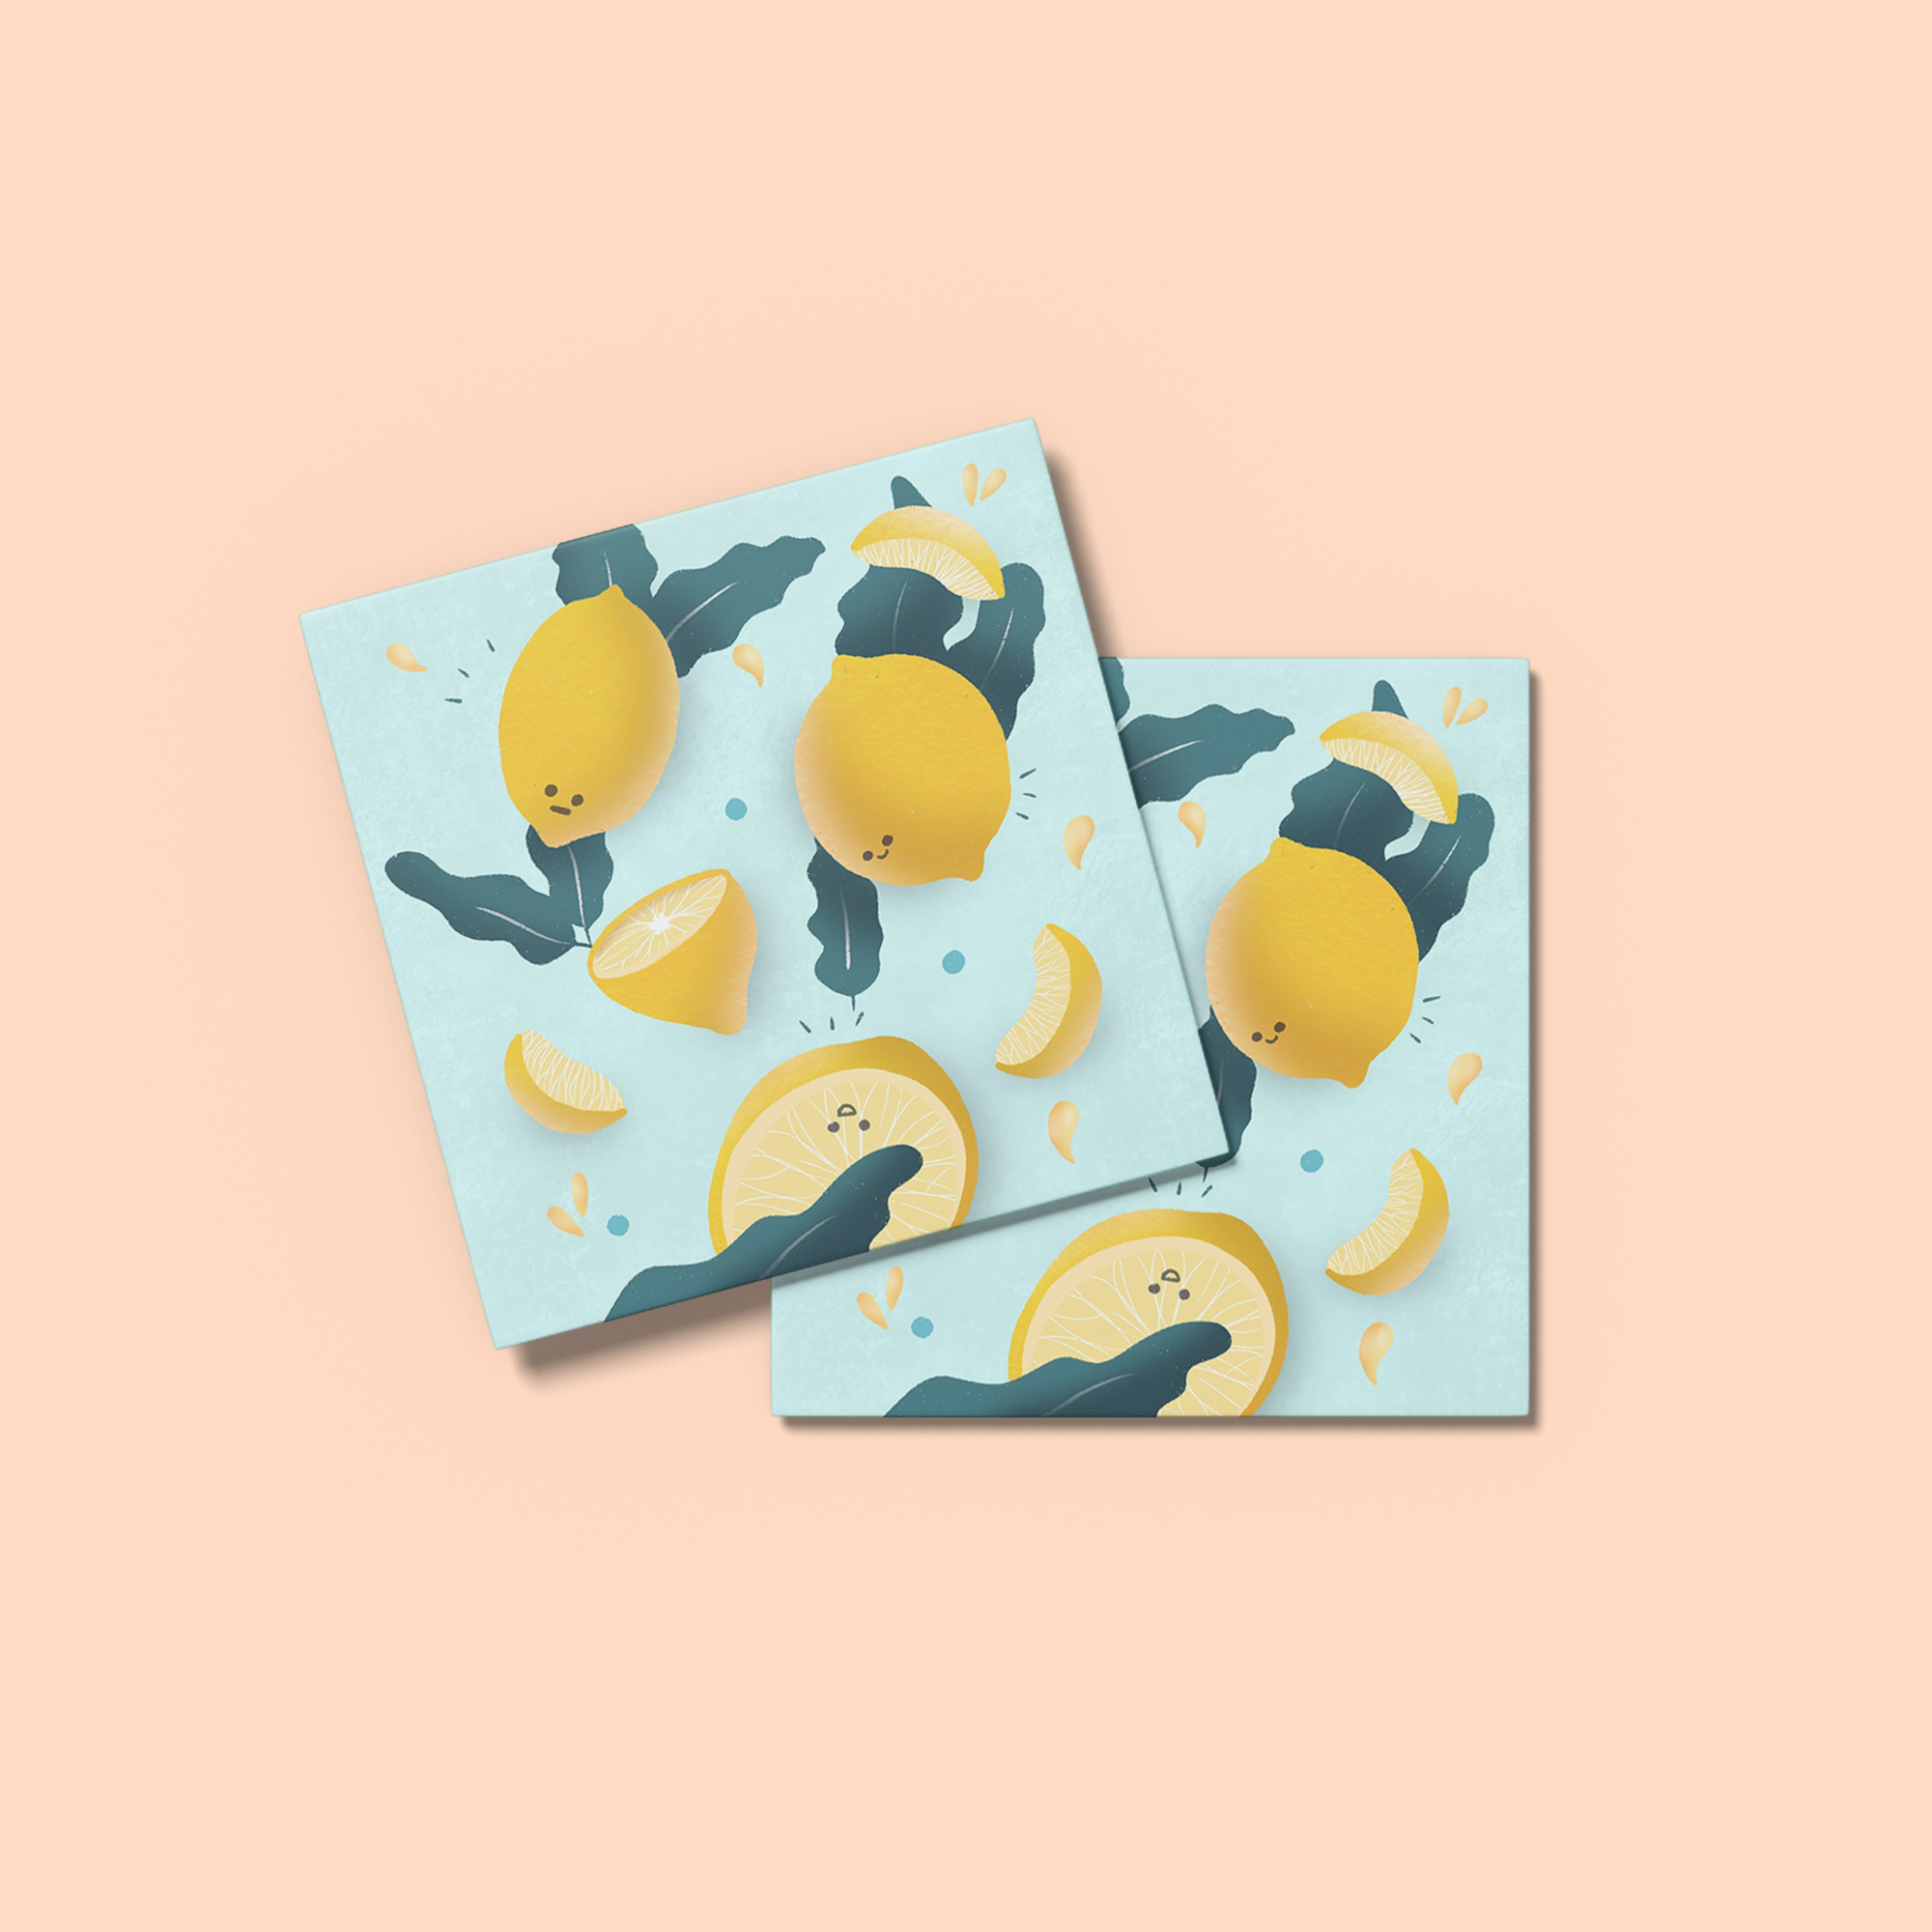 Illustration pour cartes postales intitulée "Lemonade" représentant des citron et des feuilles de menthe